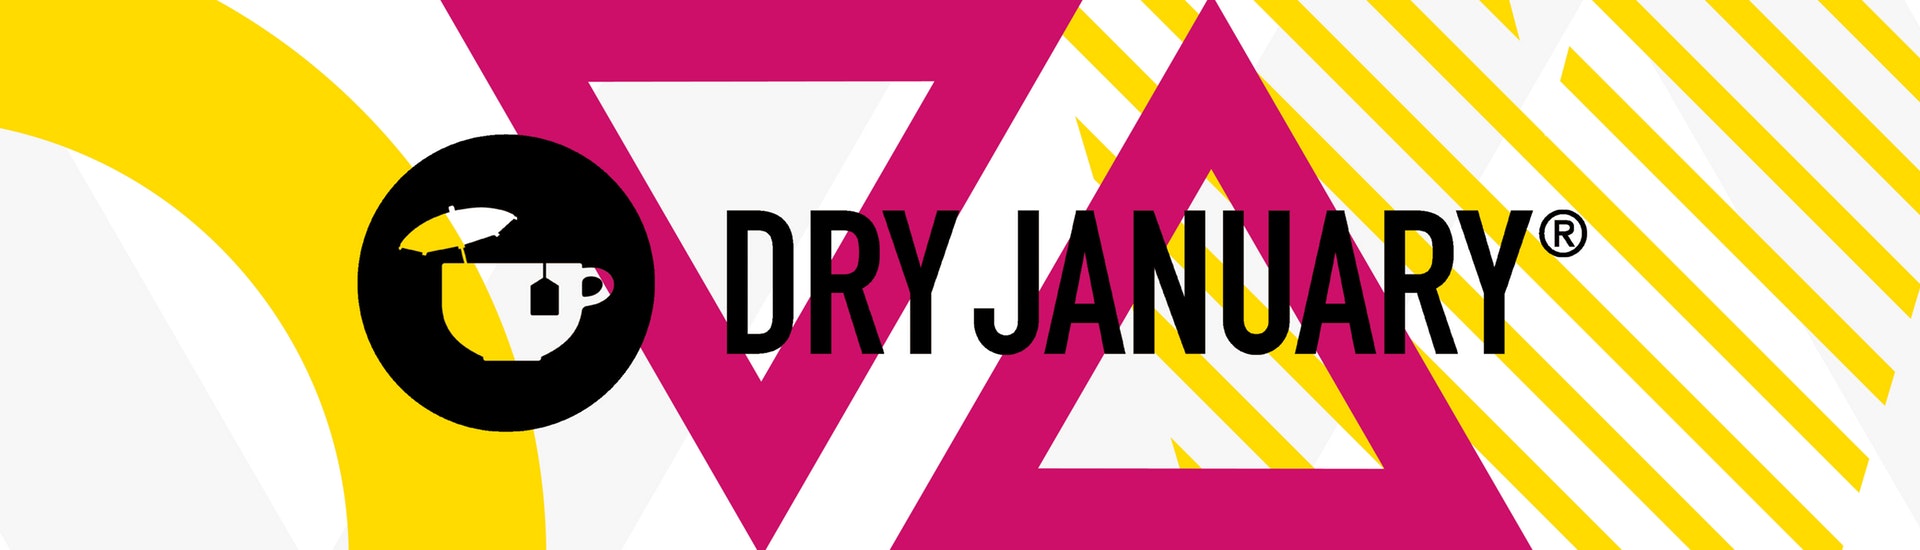 영국 음주예방협회는 매년 1월 한 달 동안 완전히 술을 끊는 ‘드라이 재뉴어리’ 캠페인을 벌이고 있다. 영국 음주예방협회 제공